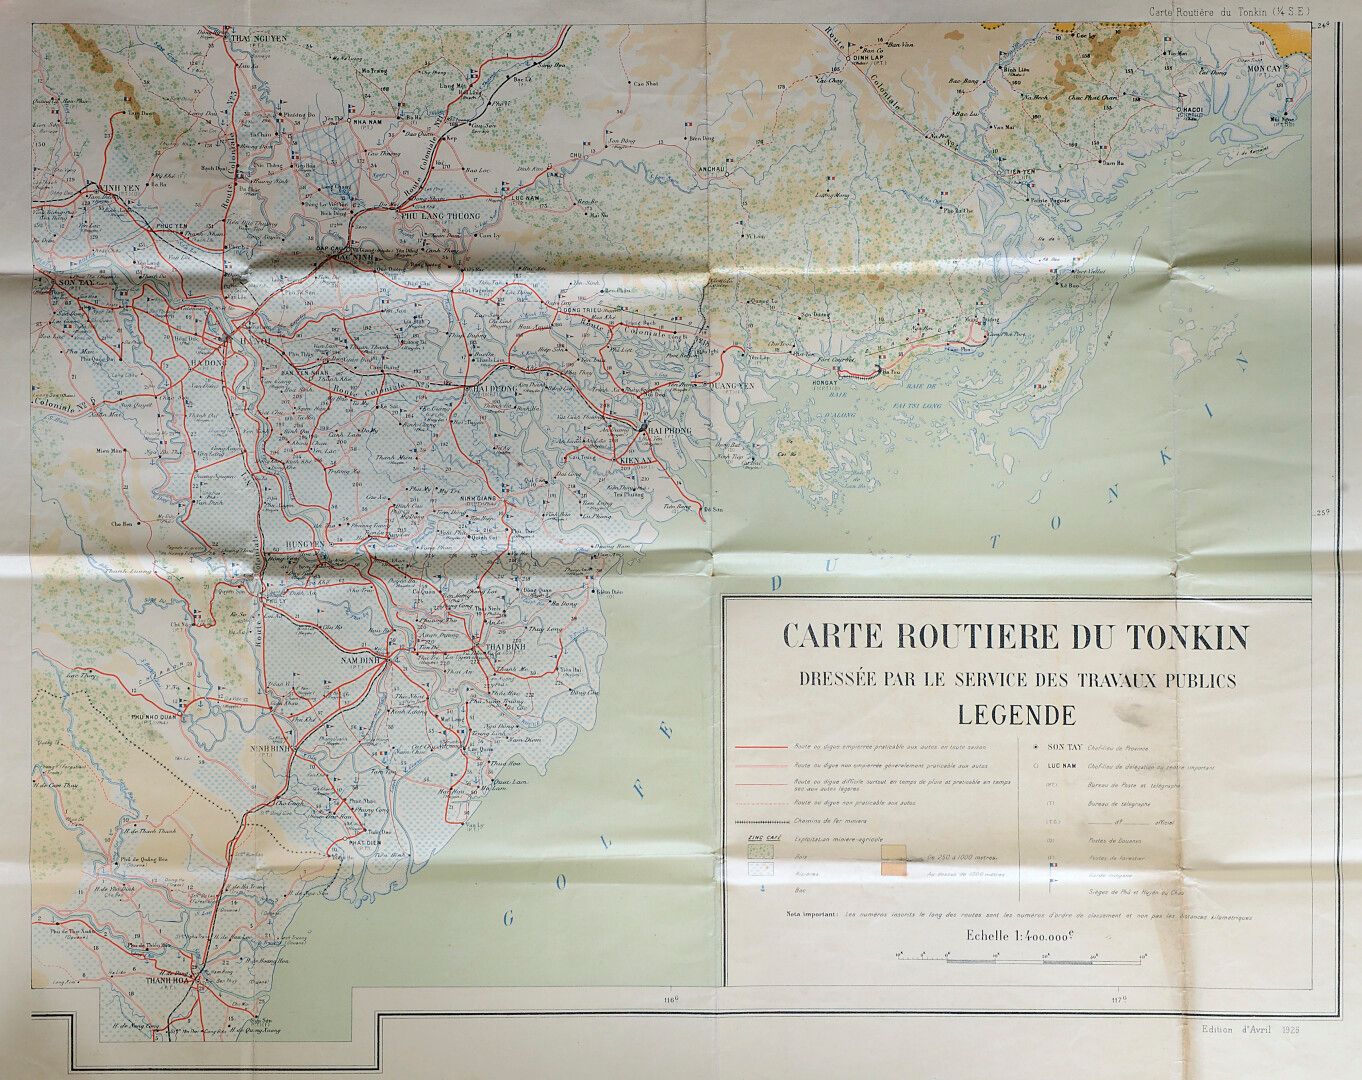 Null 1926.汤加的路线图。

彩色地图，由公共工程部绘制。1926年4月版。

尺寸：75x58厘米。总体状况良好